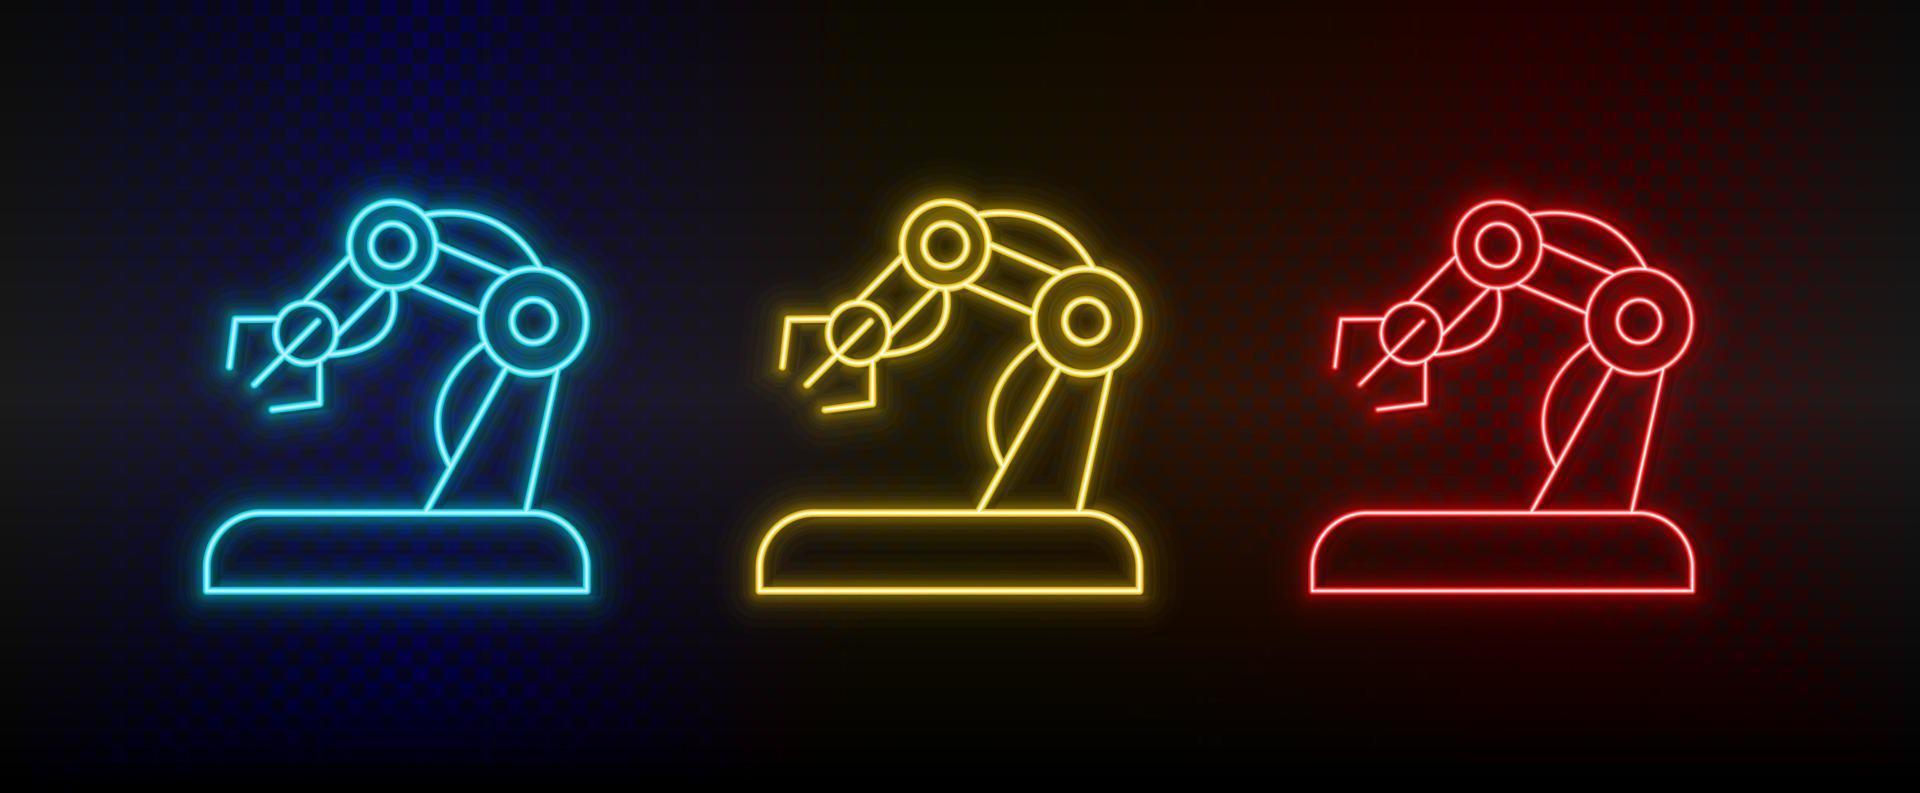 icônes au néon. bras robotique à main. ensemble d'icônes vectorielles néon rouge, bleu, jaune sur fond sombre vecteur